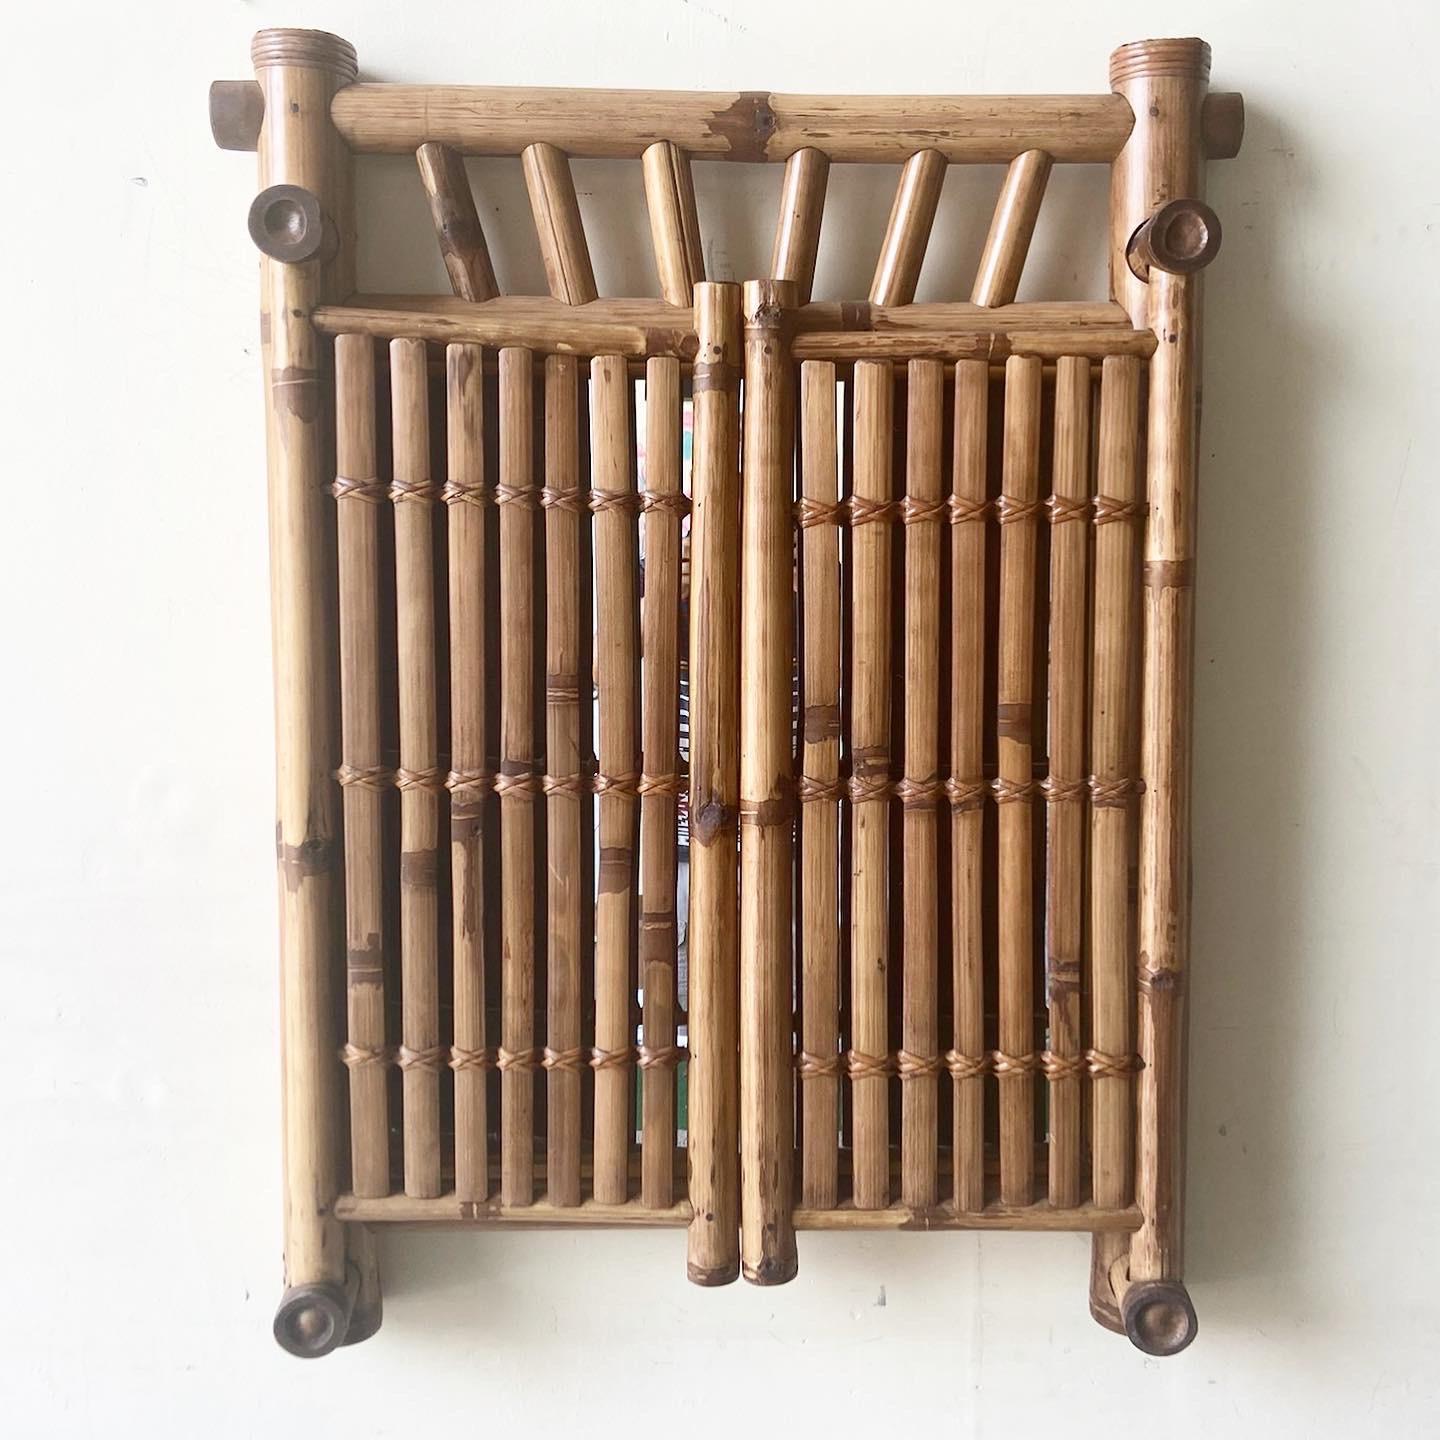 Exceptionnel miroir en bambou fabriqué en Indonésie. Comprend deux portes en bambou découpé qui s'ouvrent et se ferment comme les portes du bus.

S'ouvre jusqu'à 56